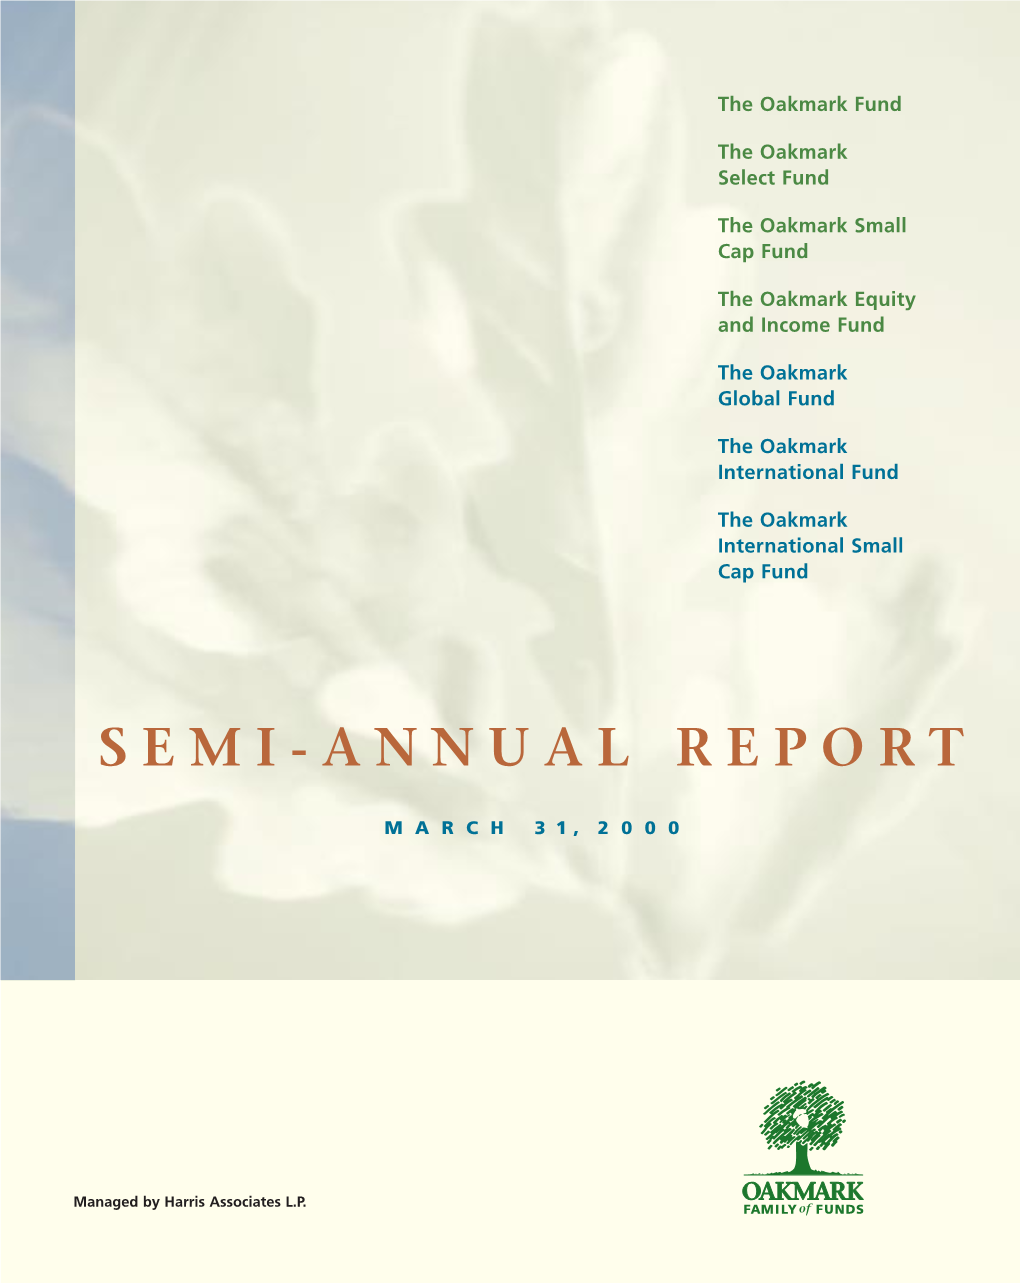 2000 Semi-Annual Report